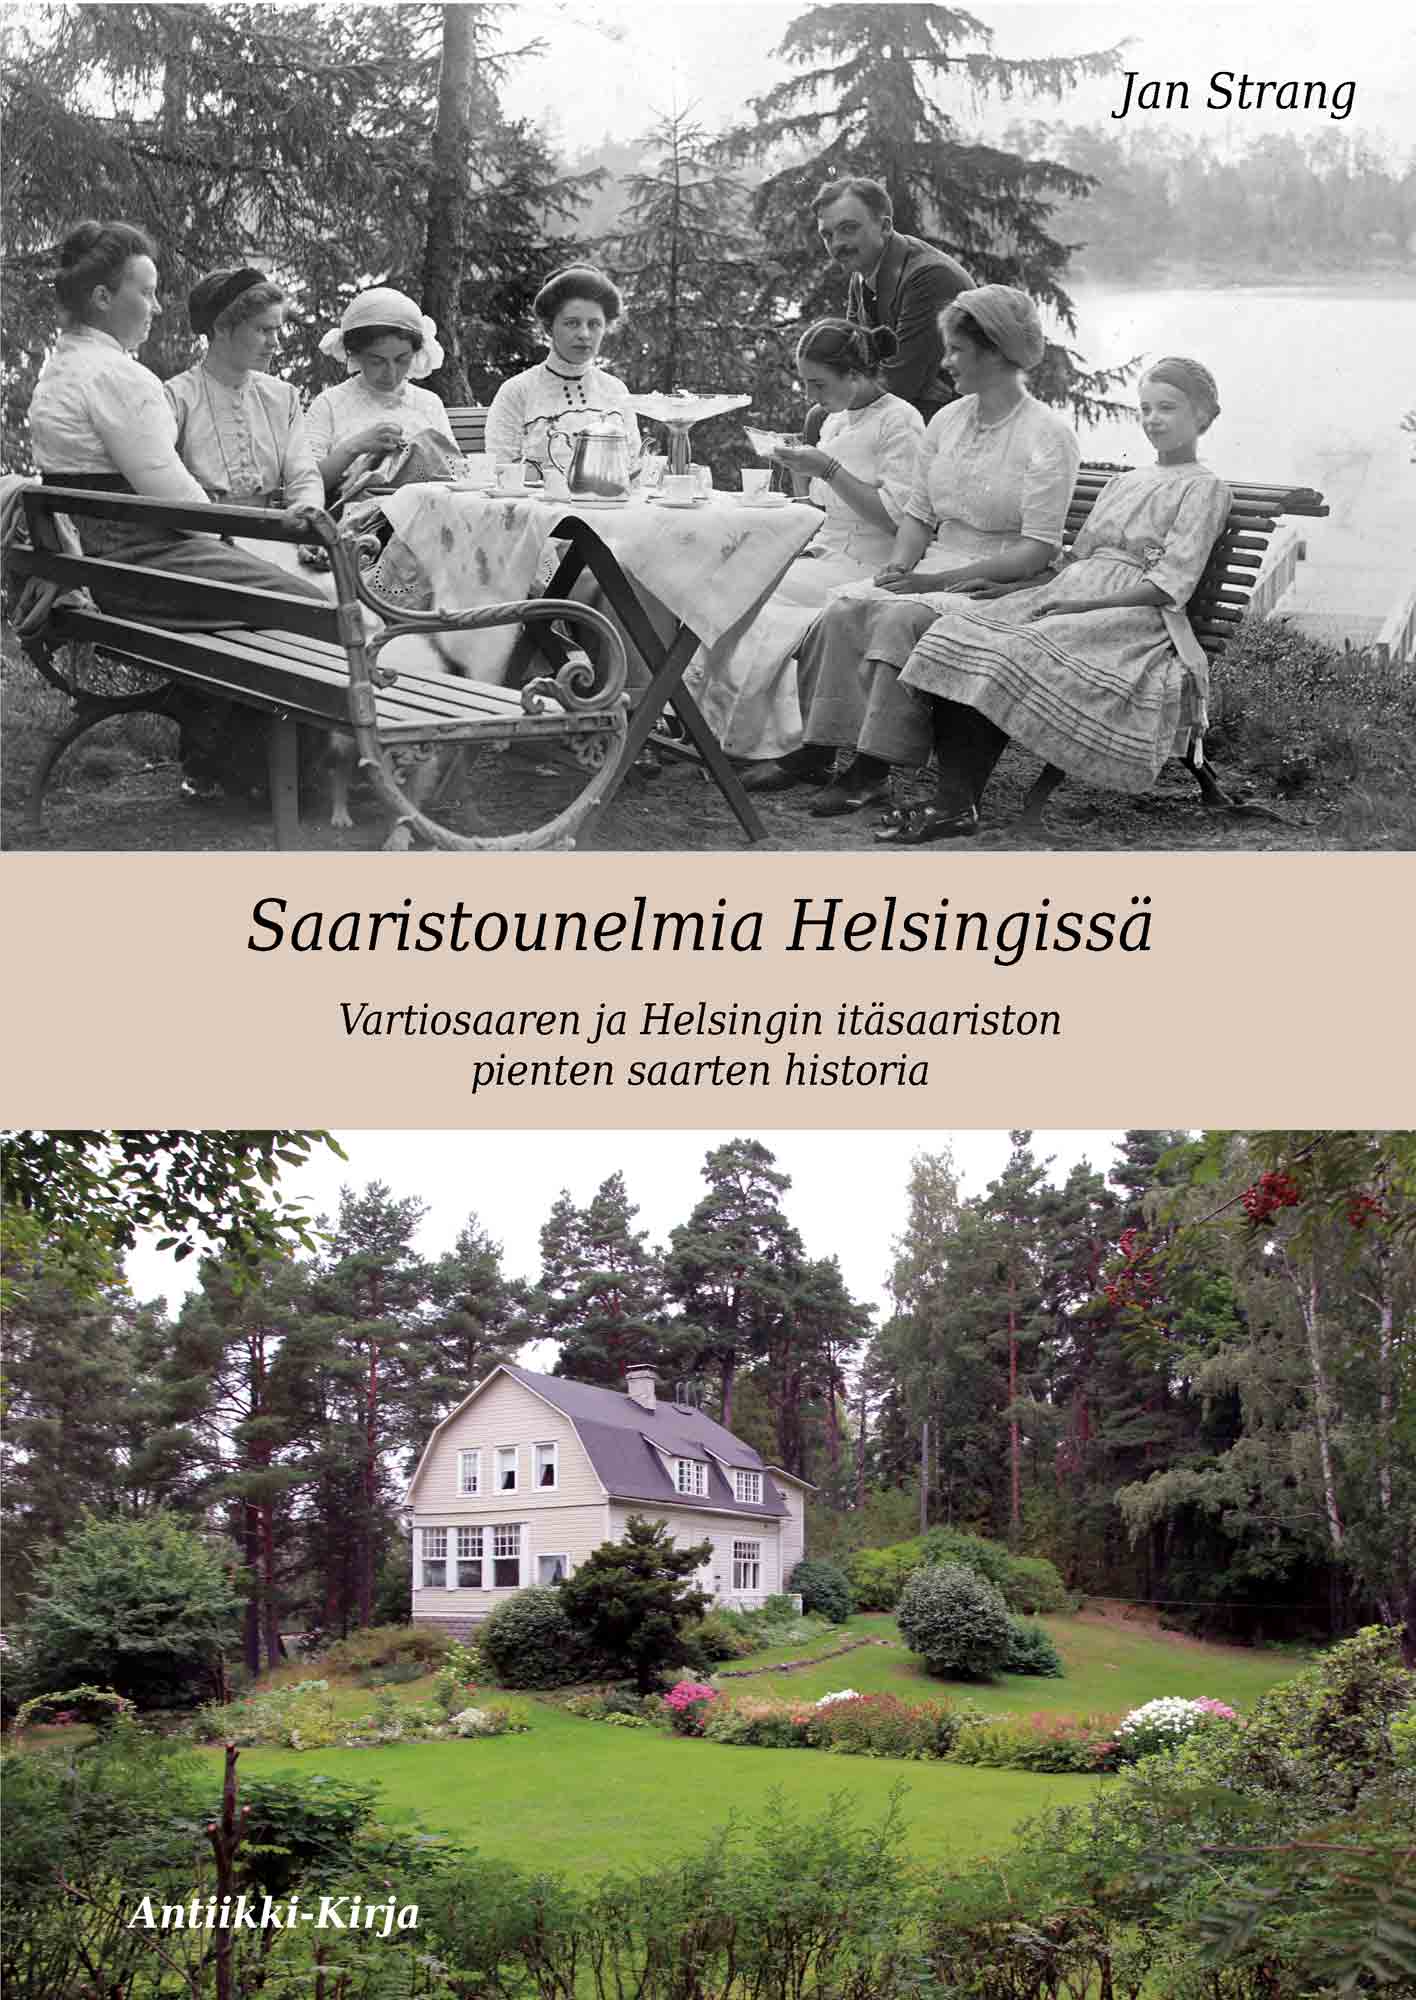 Vartiosaaren historia ja Helsingin itsaariston historia